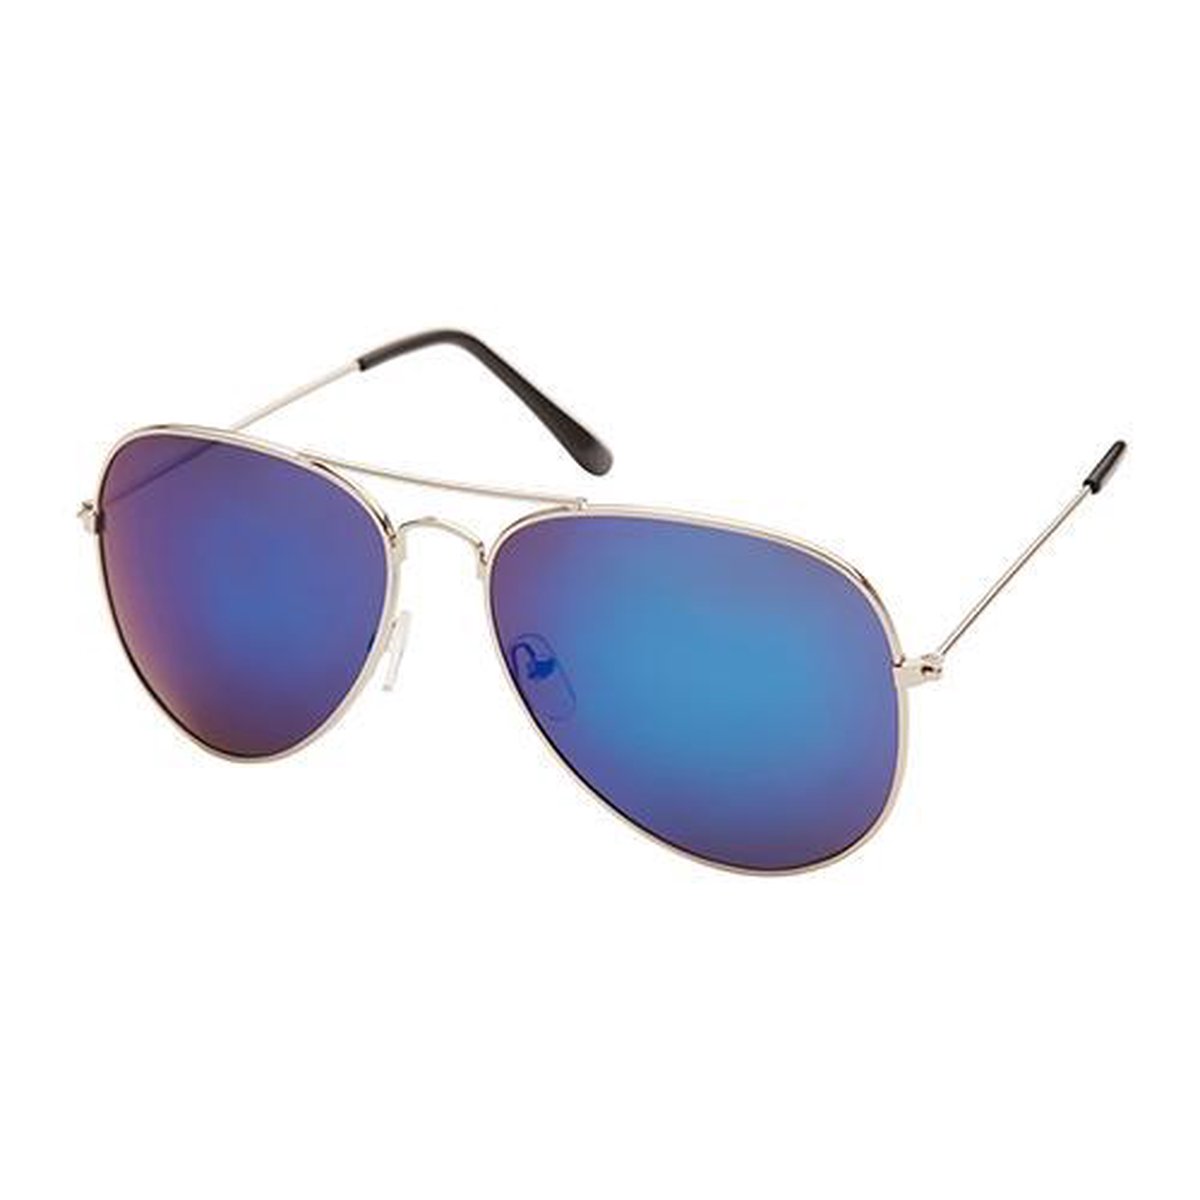 Freaky Glasses® - zilveren piloten zonnebril - blauw-paarse spiegel lenzen